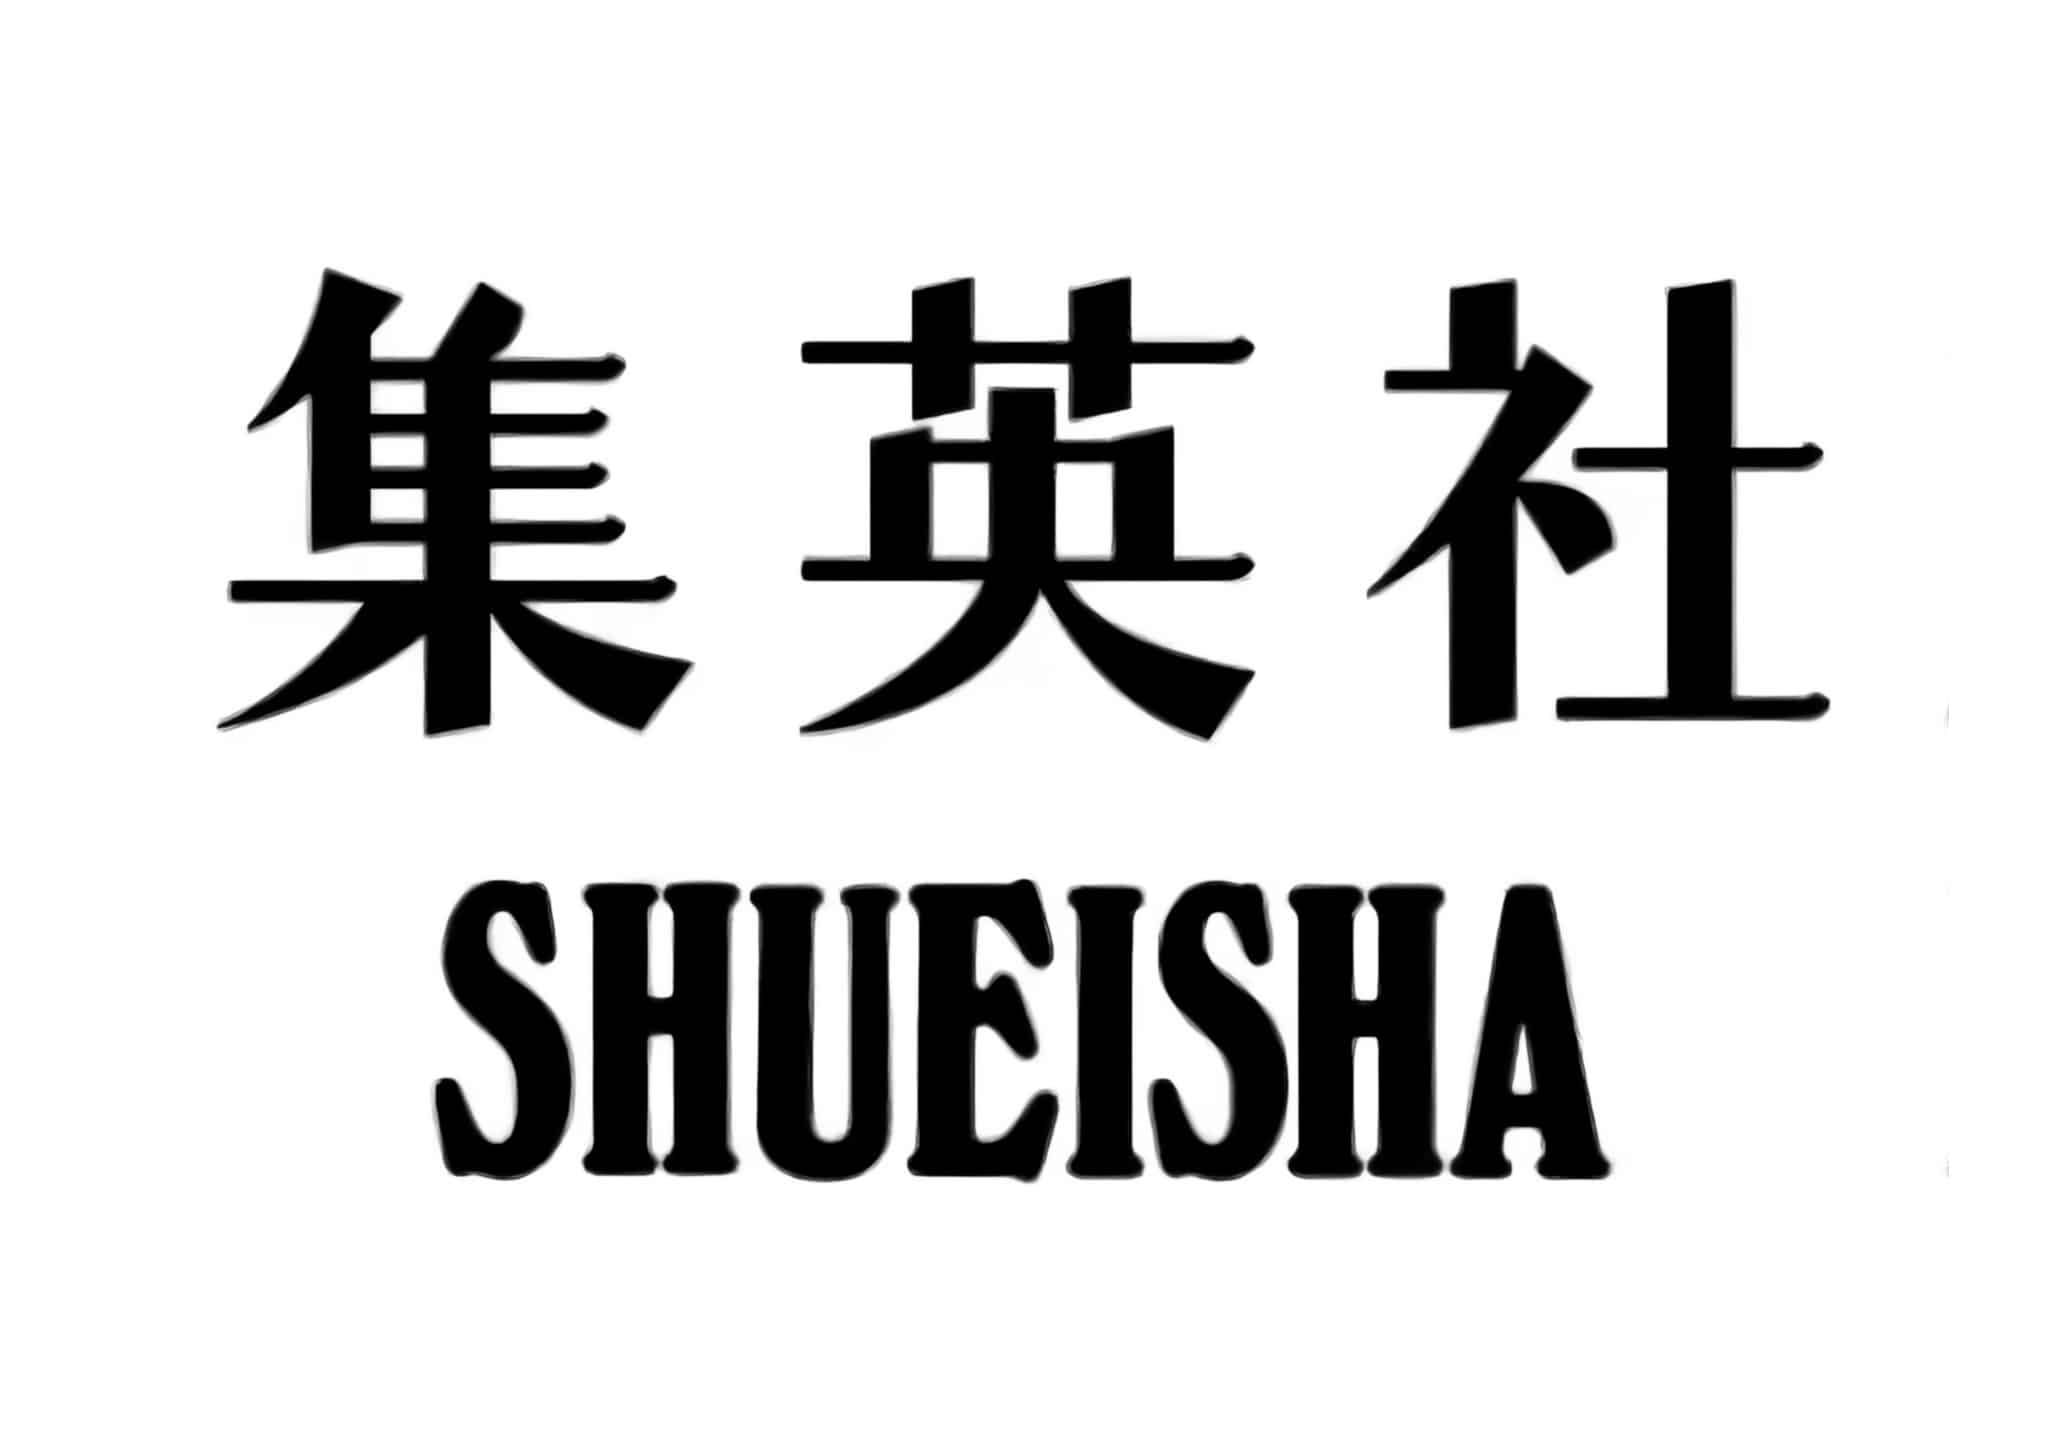 Article à propos des strikes des fans de Dragonball par la Shueisha sur Twitter